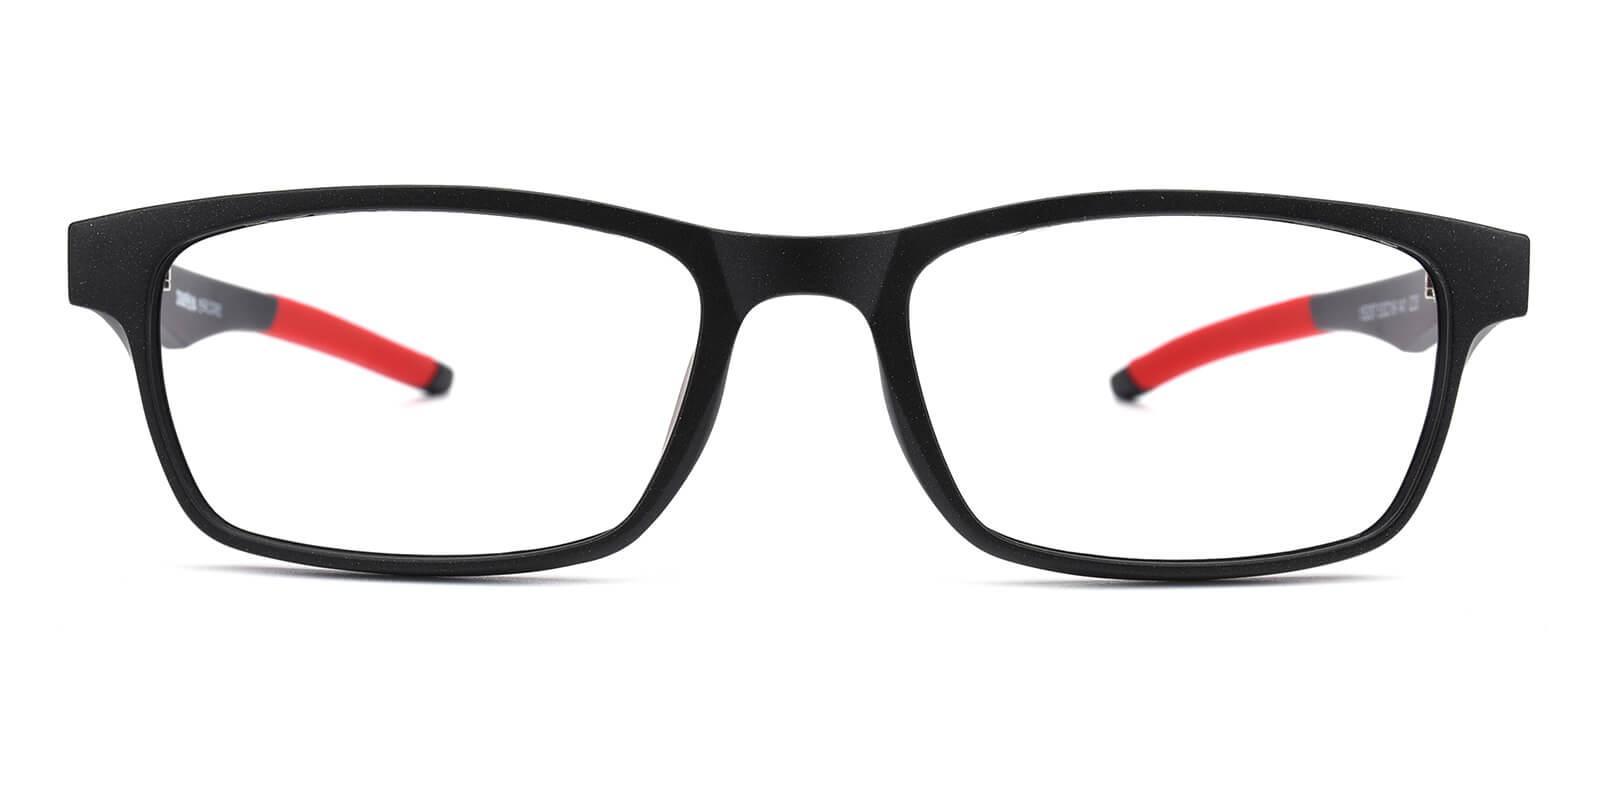 Java Red TR SportsGlasses , UniversalBridgeFit Frames from ABBE Glasses